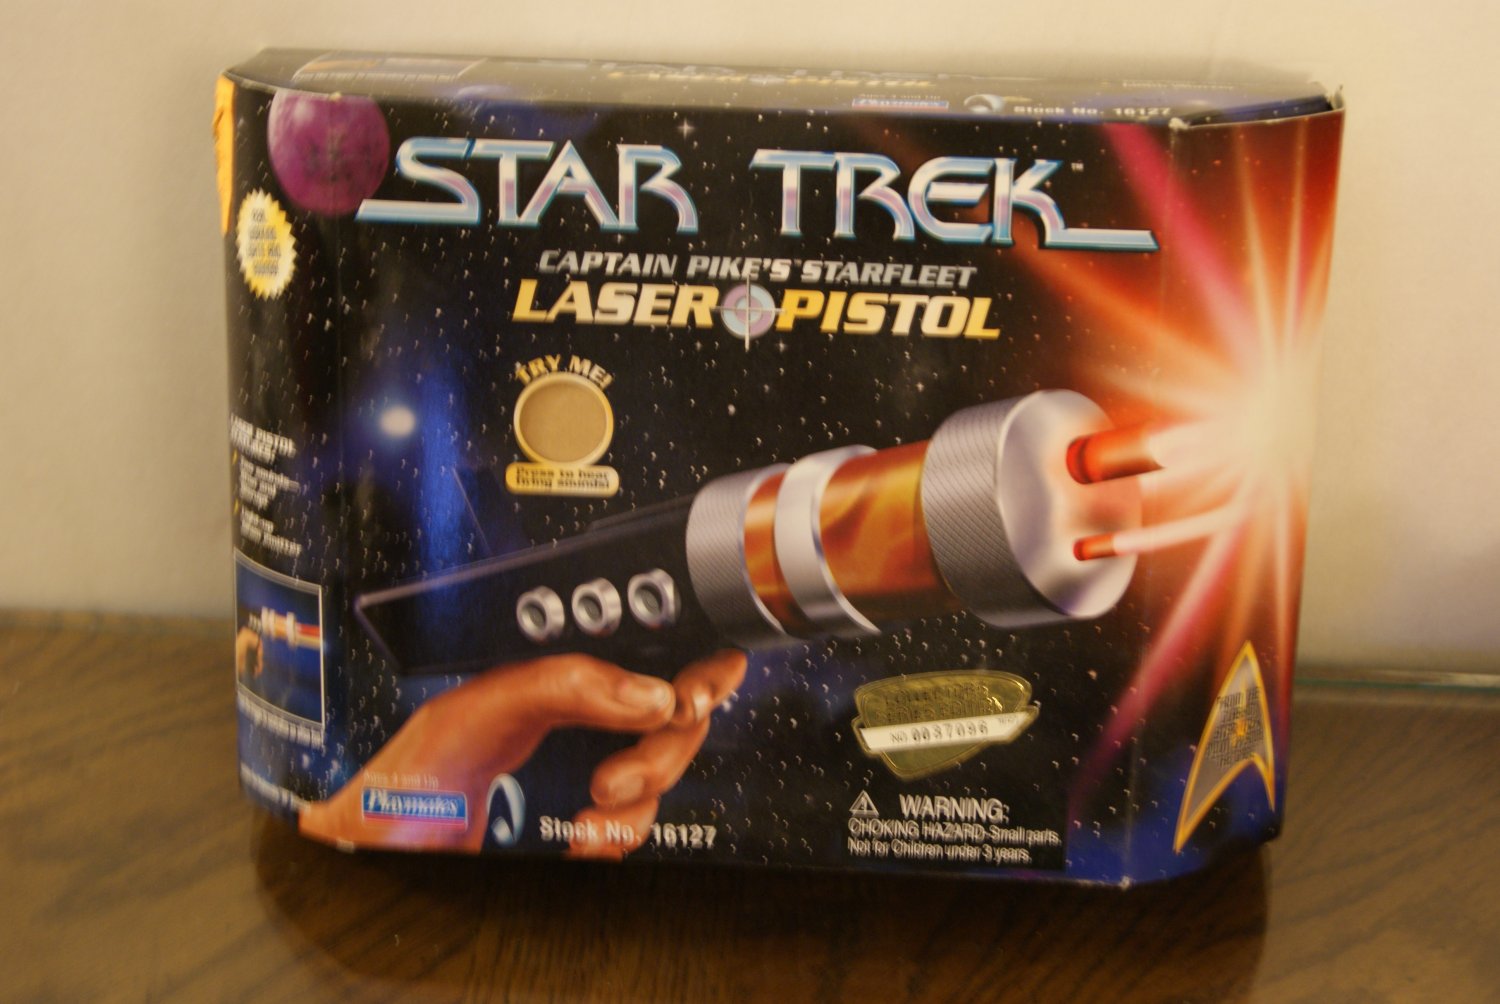 Star Trek / Laser pistol box